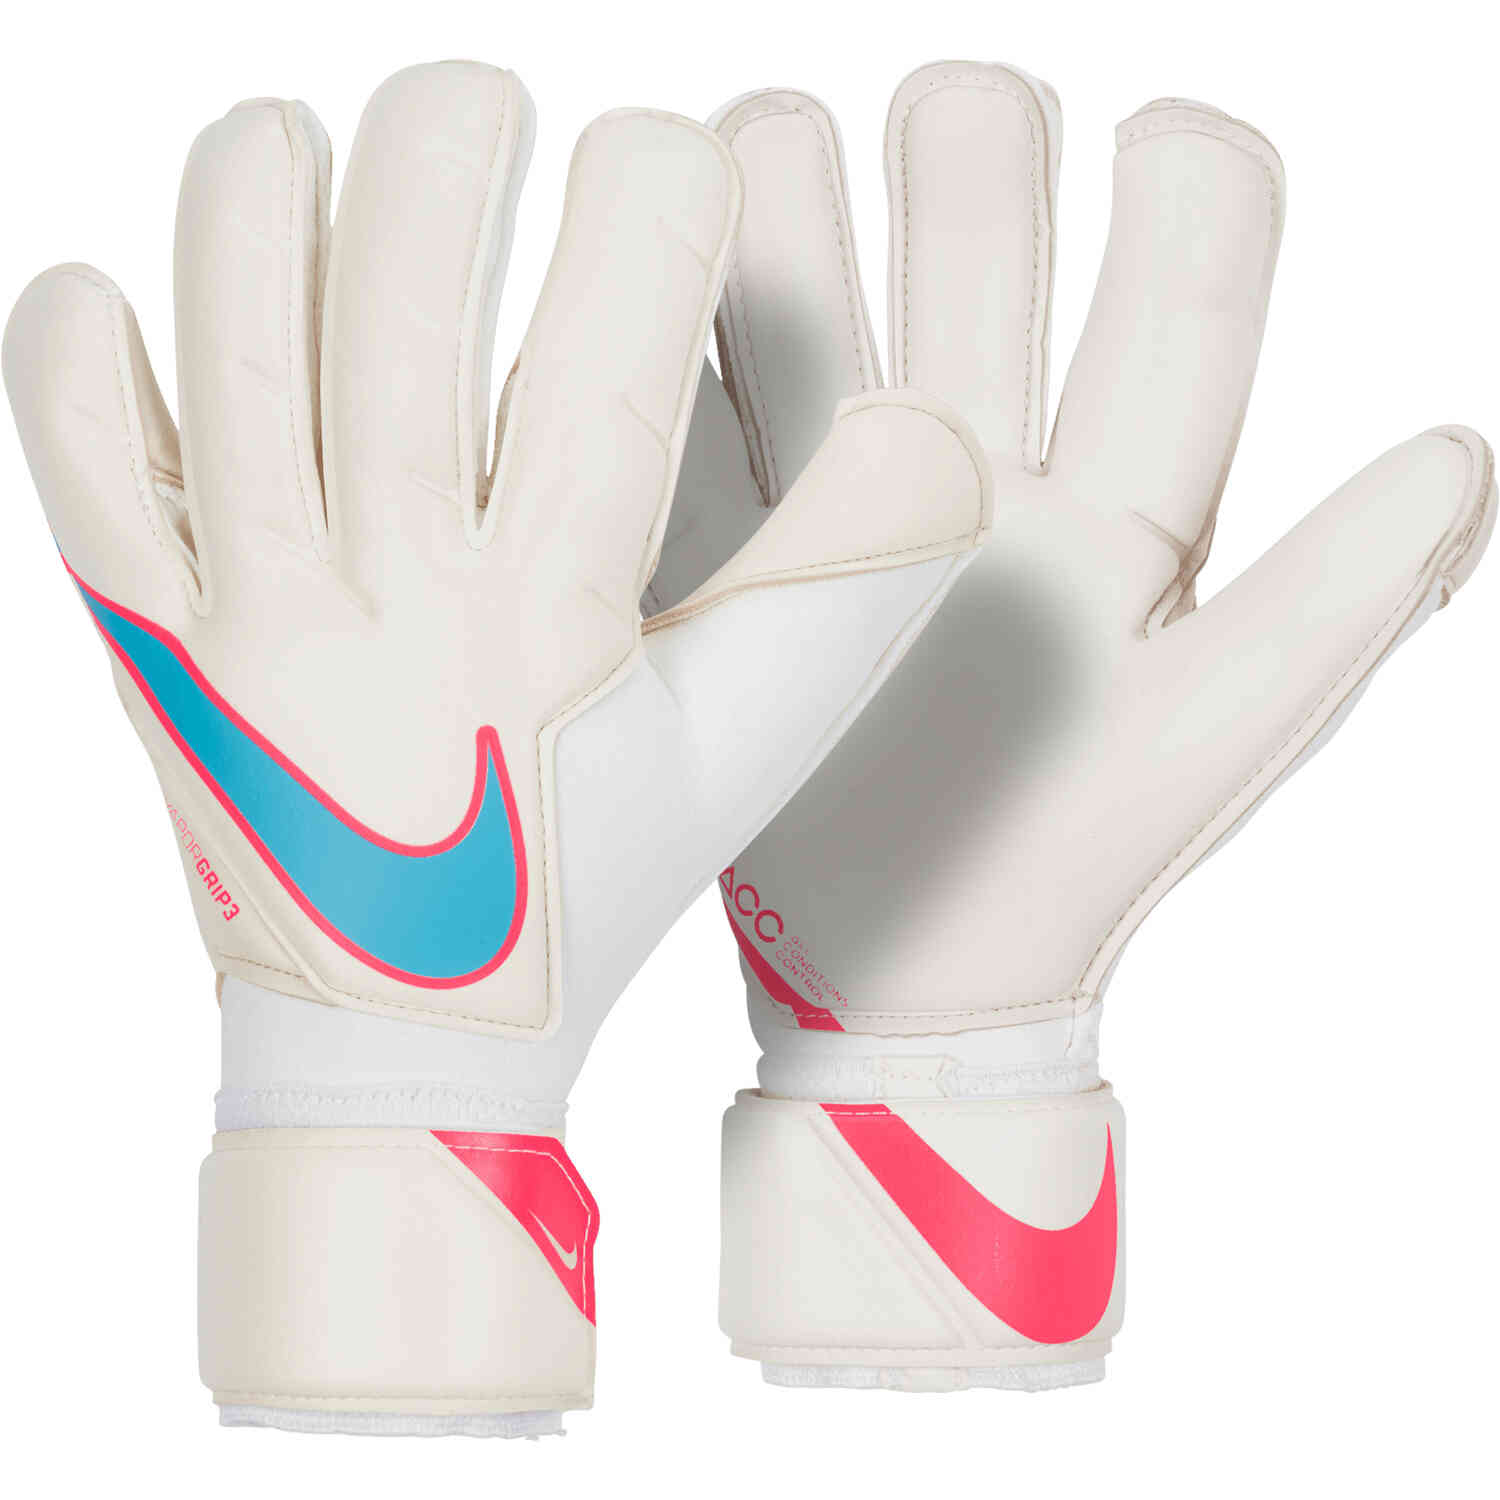 soccer goalie gloves